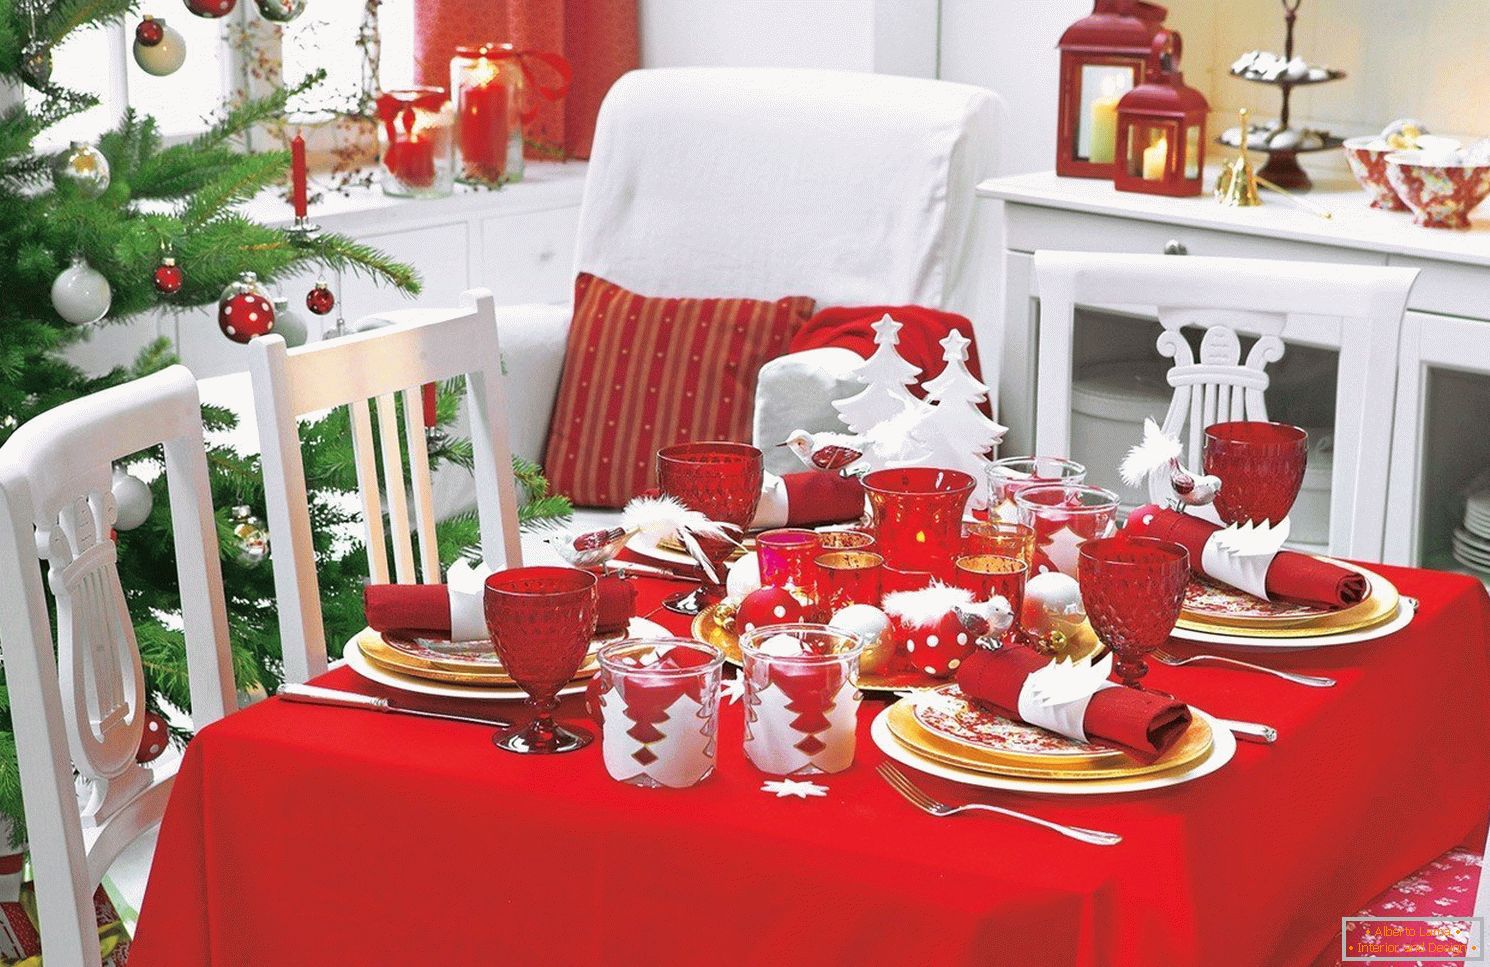 Décoration d'une table de Nouvel An en rouge